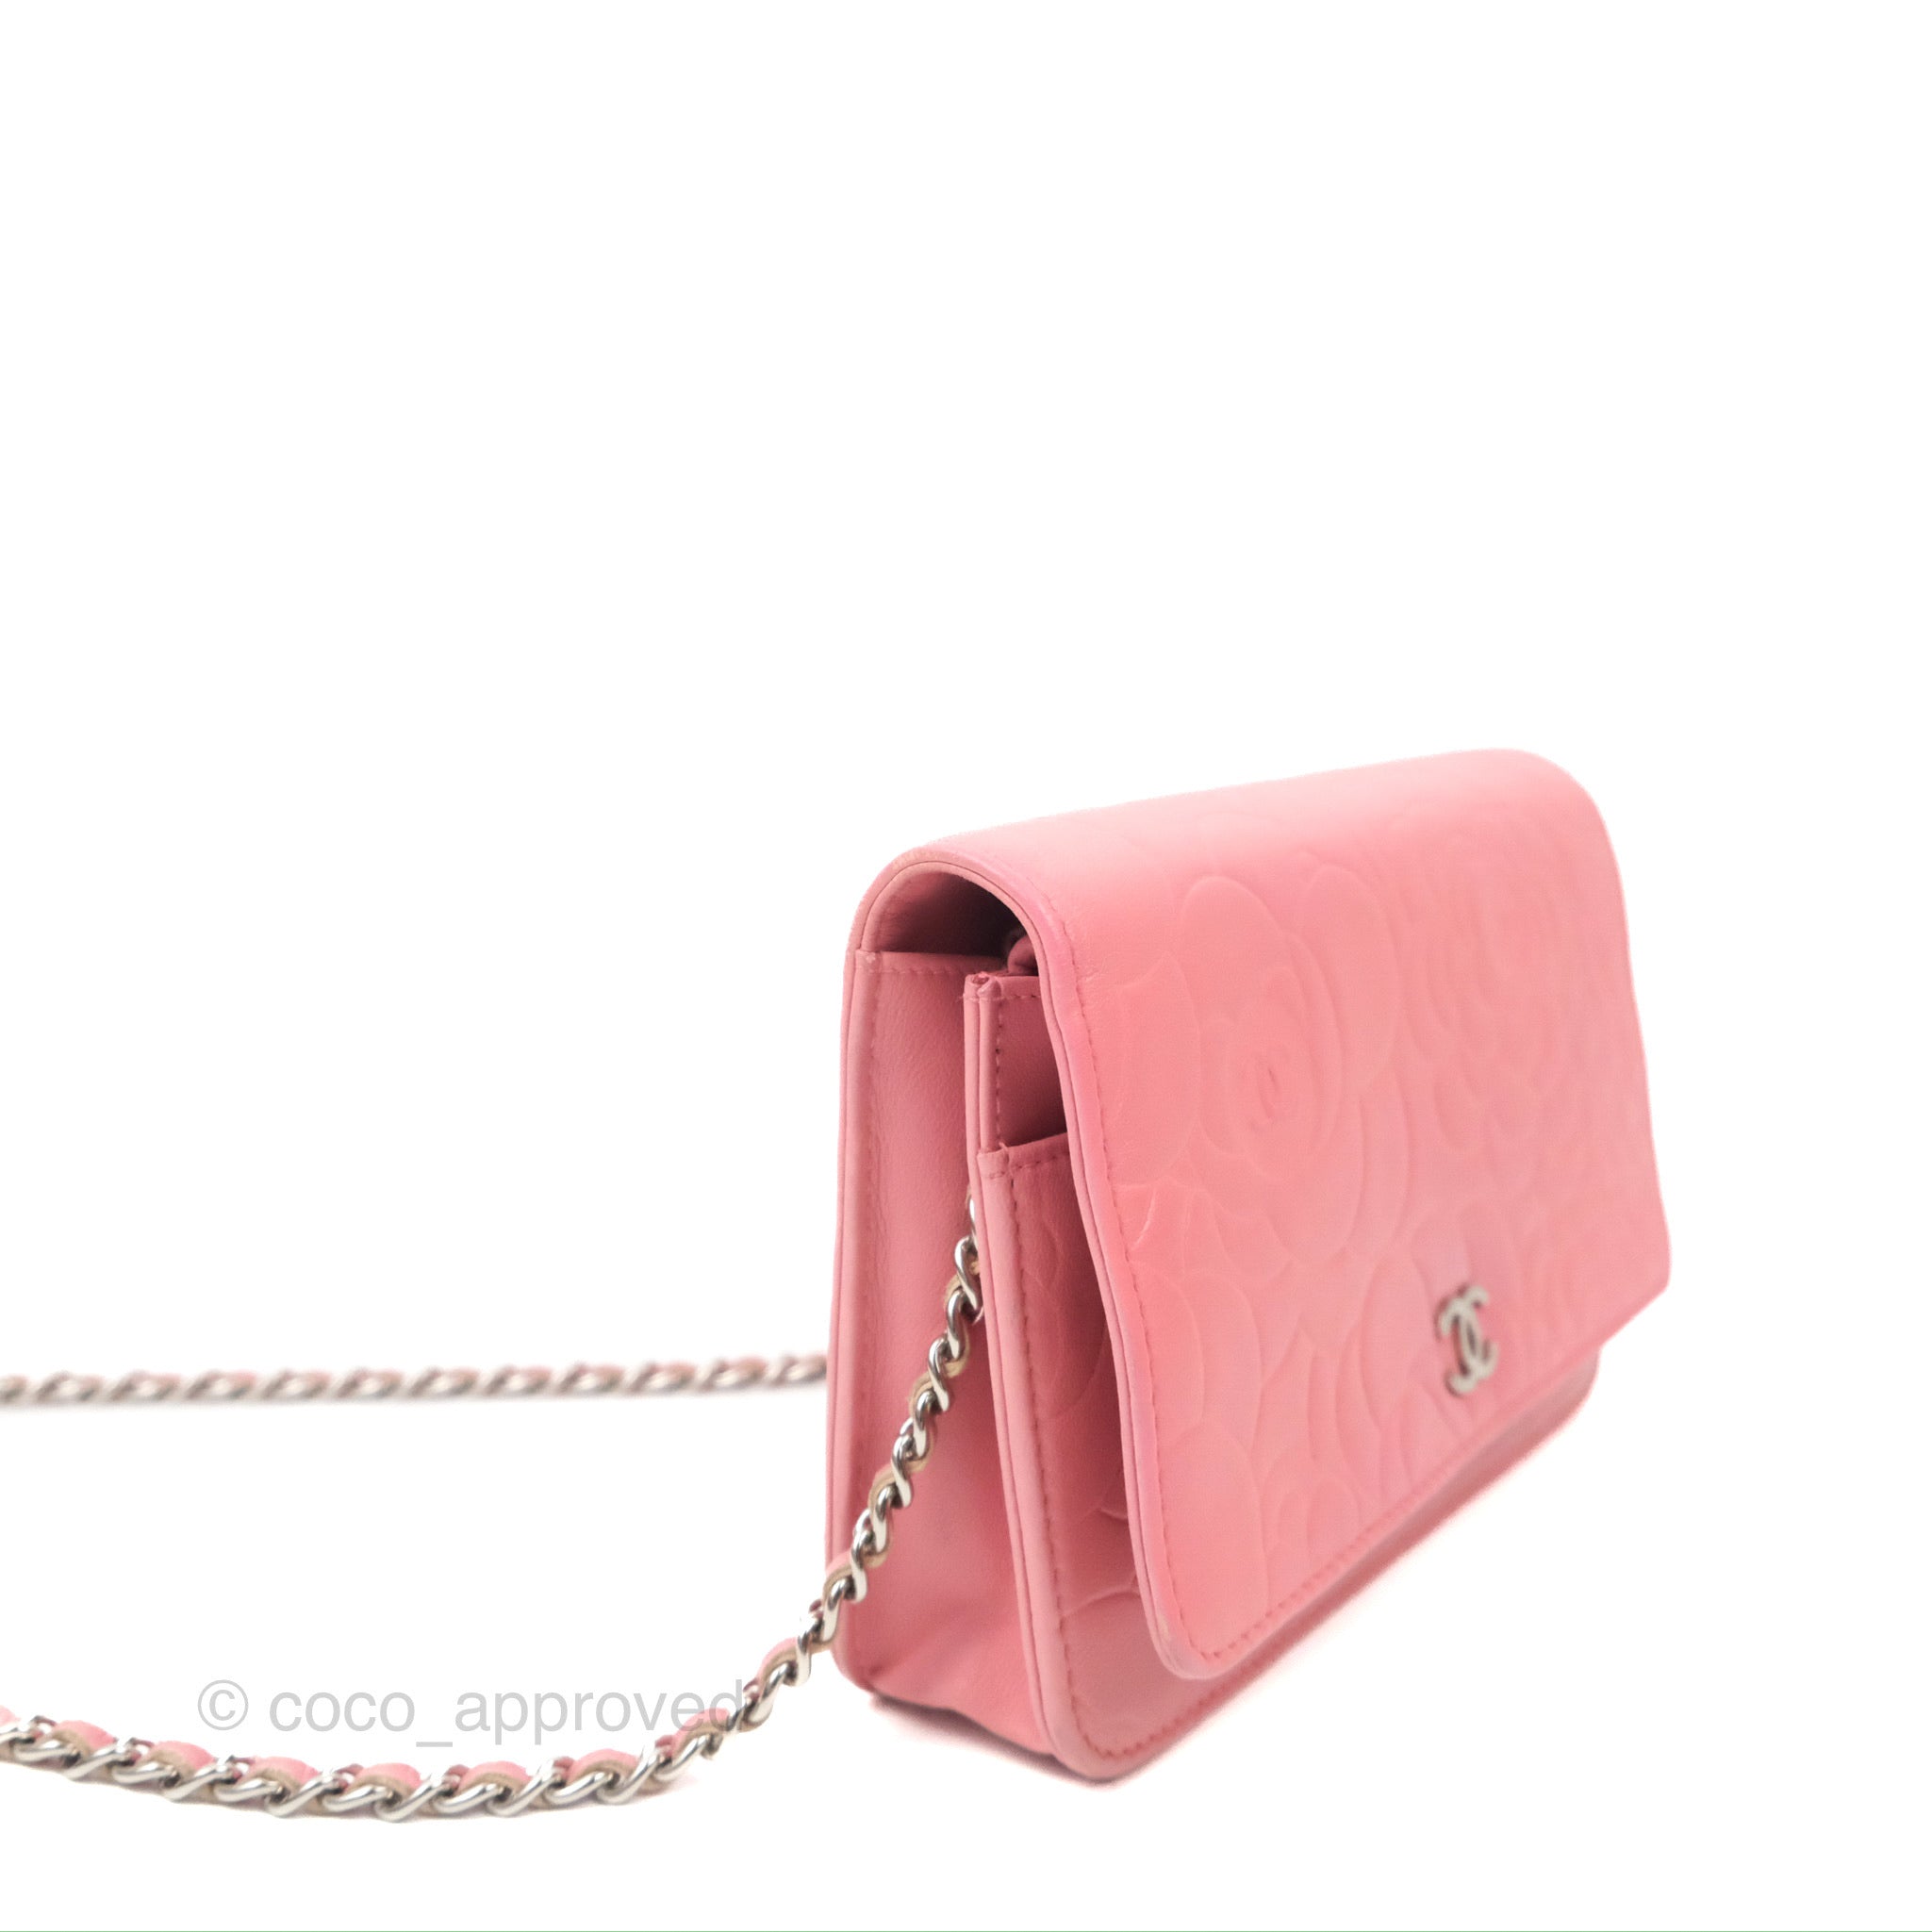 authentic chanel chain strap purse